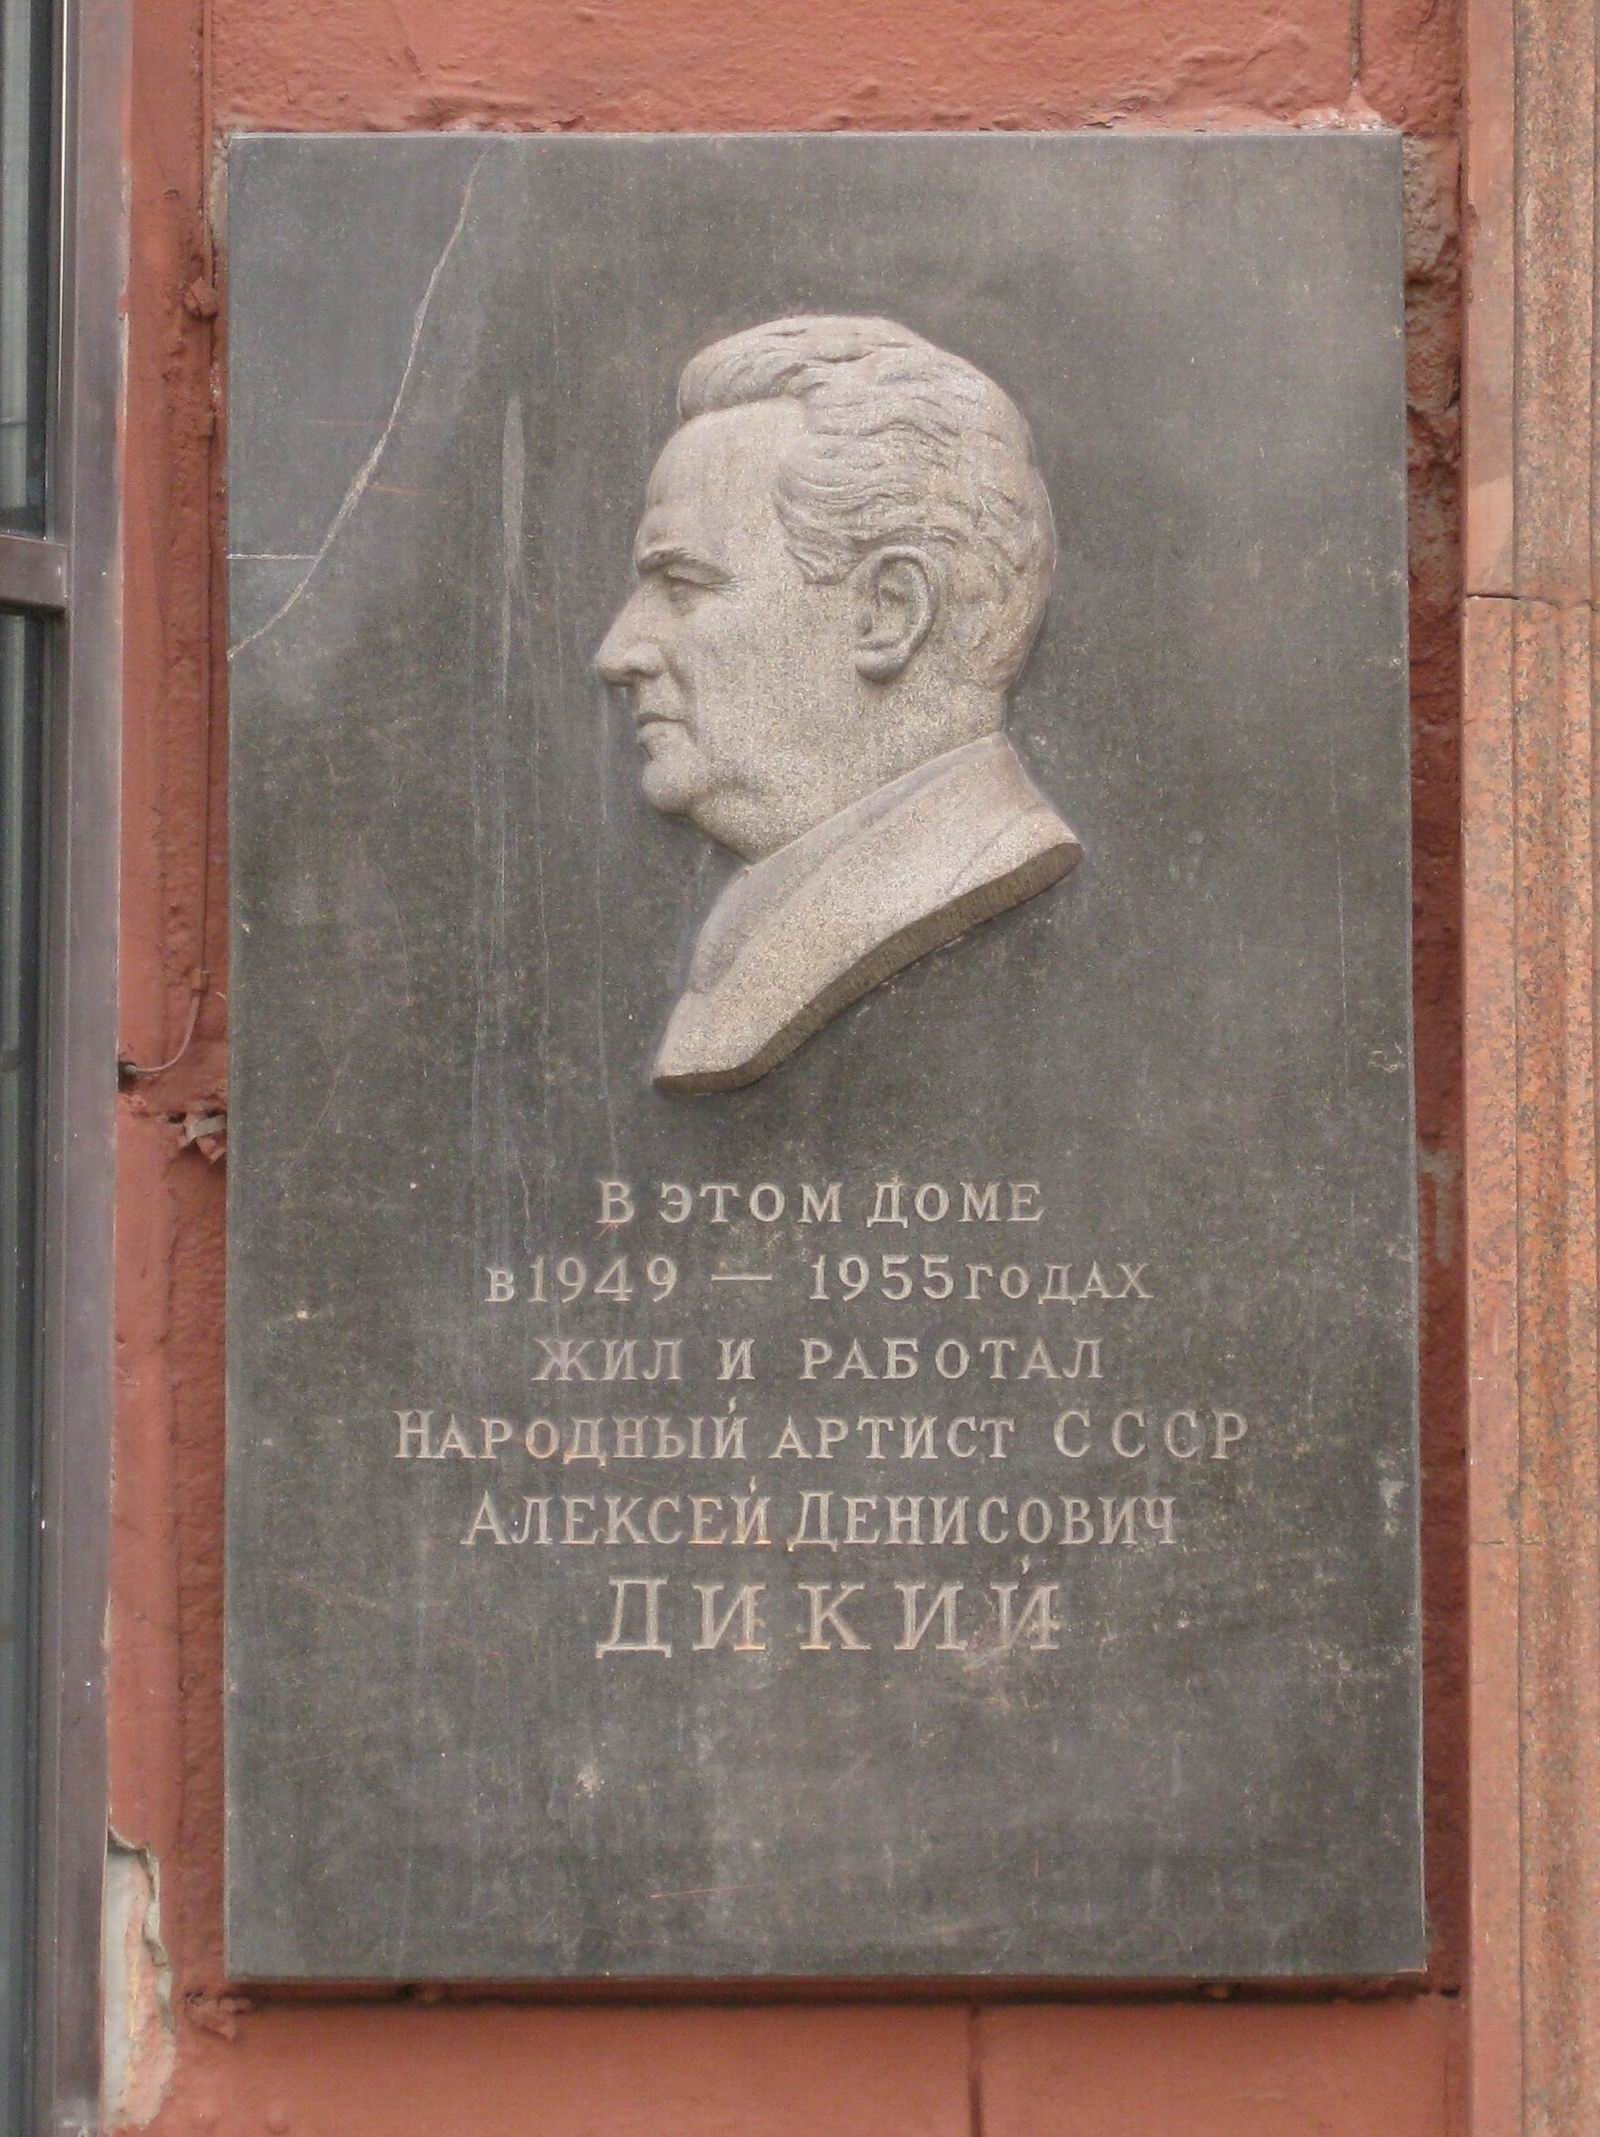 Мемориальная доска Дикому А.Д. (1889–1955), ск. Д.Д.Стреляев, на Тверской улице, дом 19 (со стороны Большой Бронной), открыта 13.7.1957.